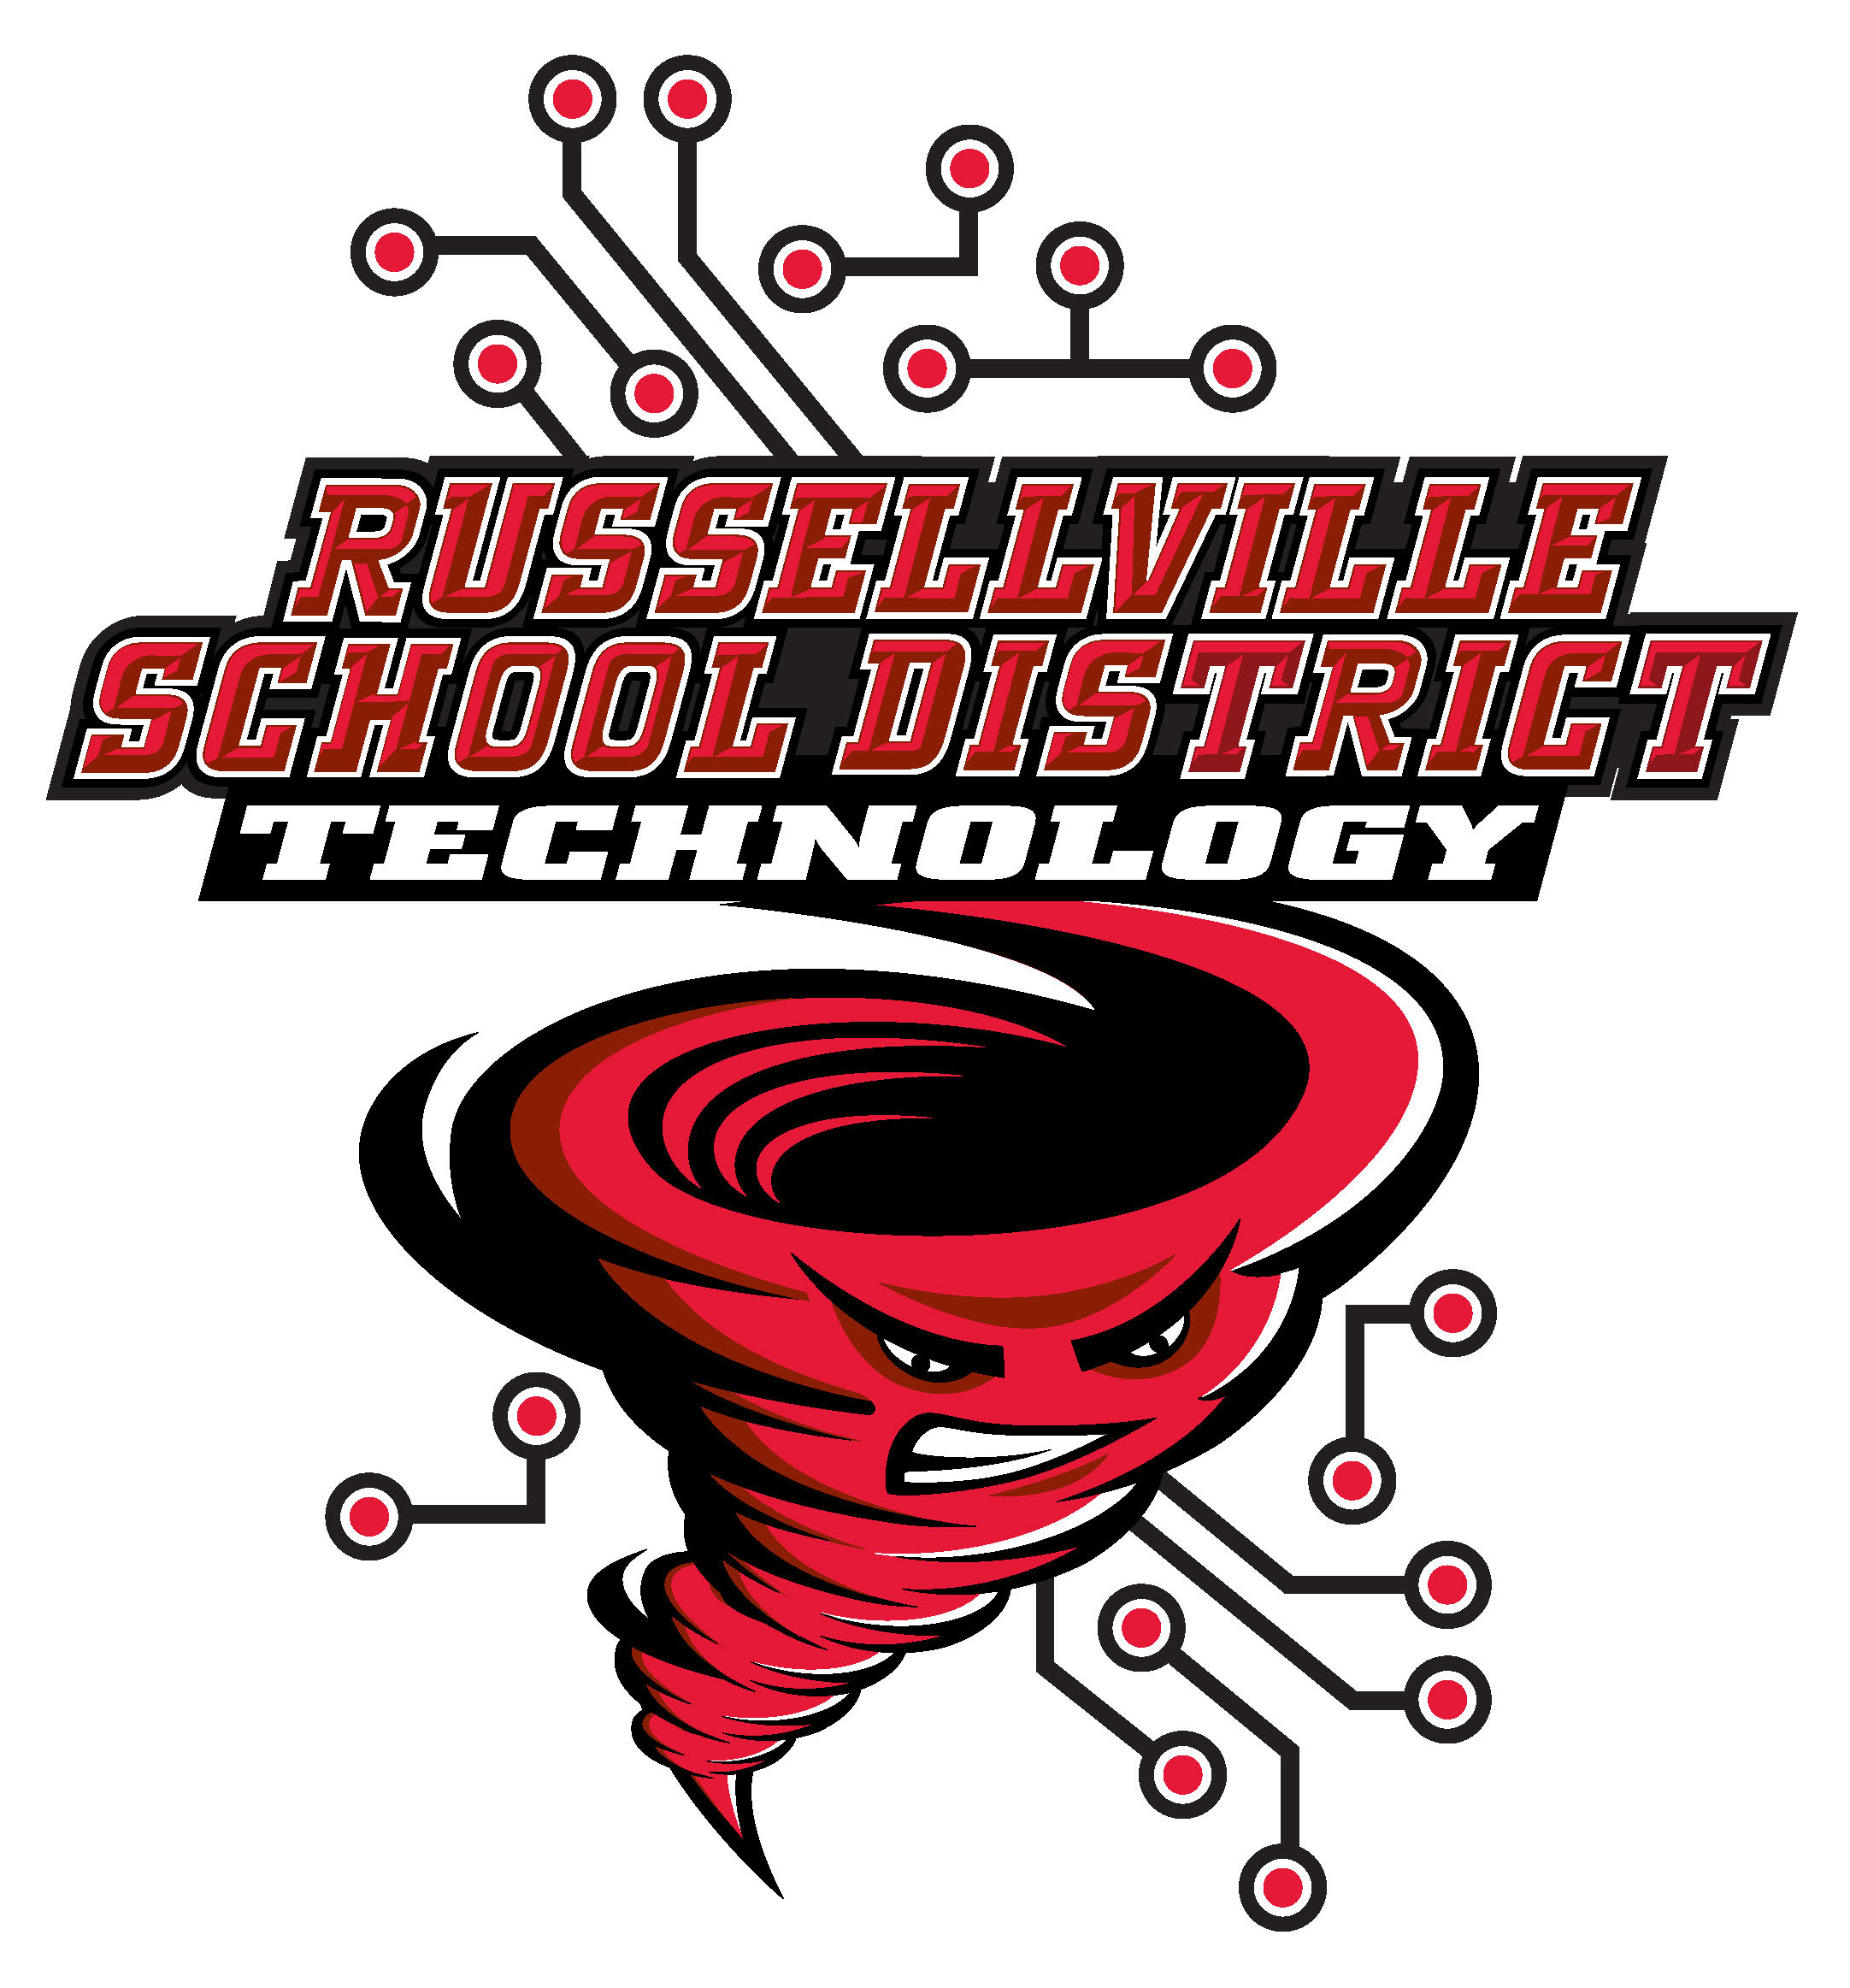 Reussellville School District